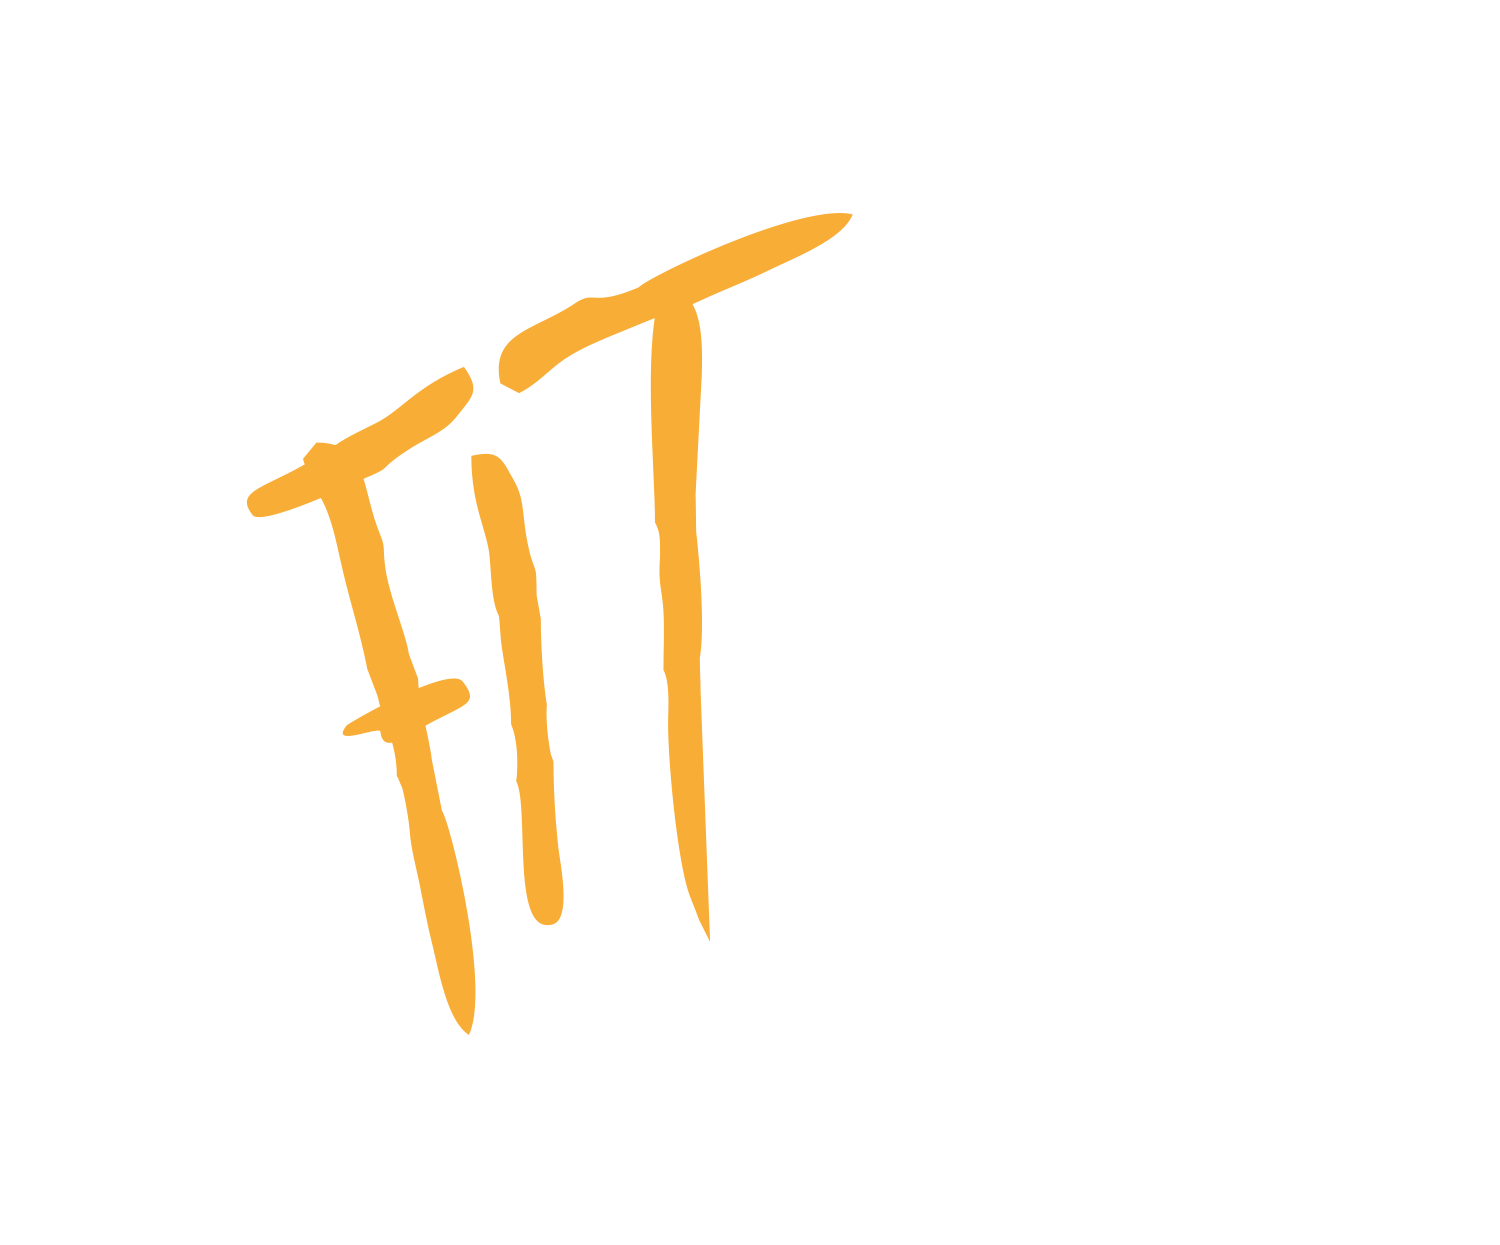 Festival Internacional de Trompeta Ciutat de Xixona